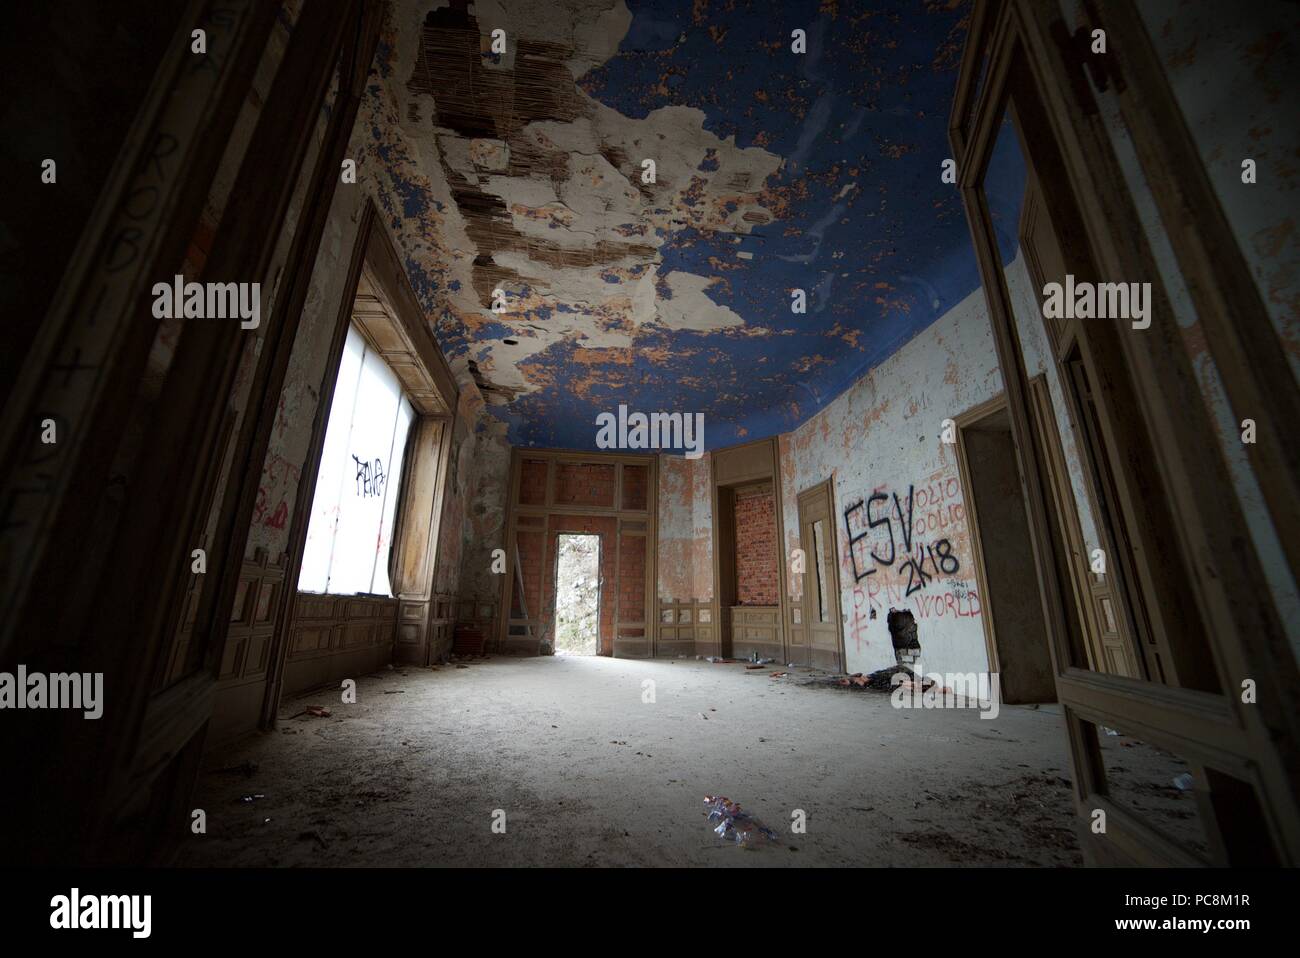 Ein heruntergekommenes Zimmer in einem verlassenen Herrenhaus in Italien, mit Farbe blättert von den Wänden und viel Staub, Graffiti und Verfall. Stockfoto